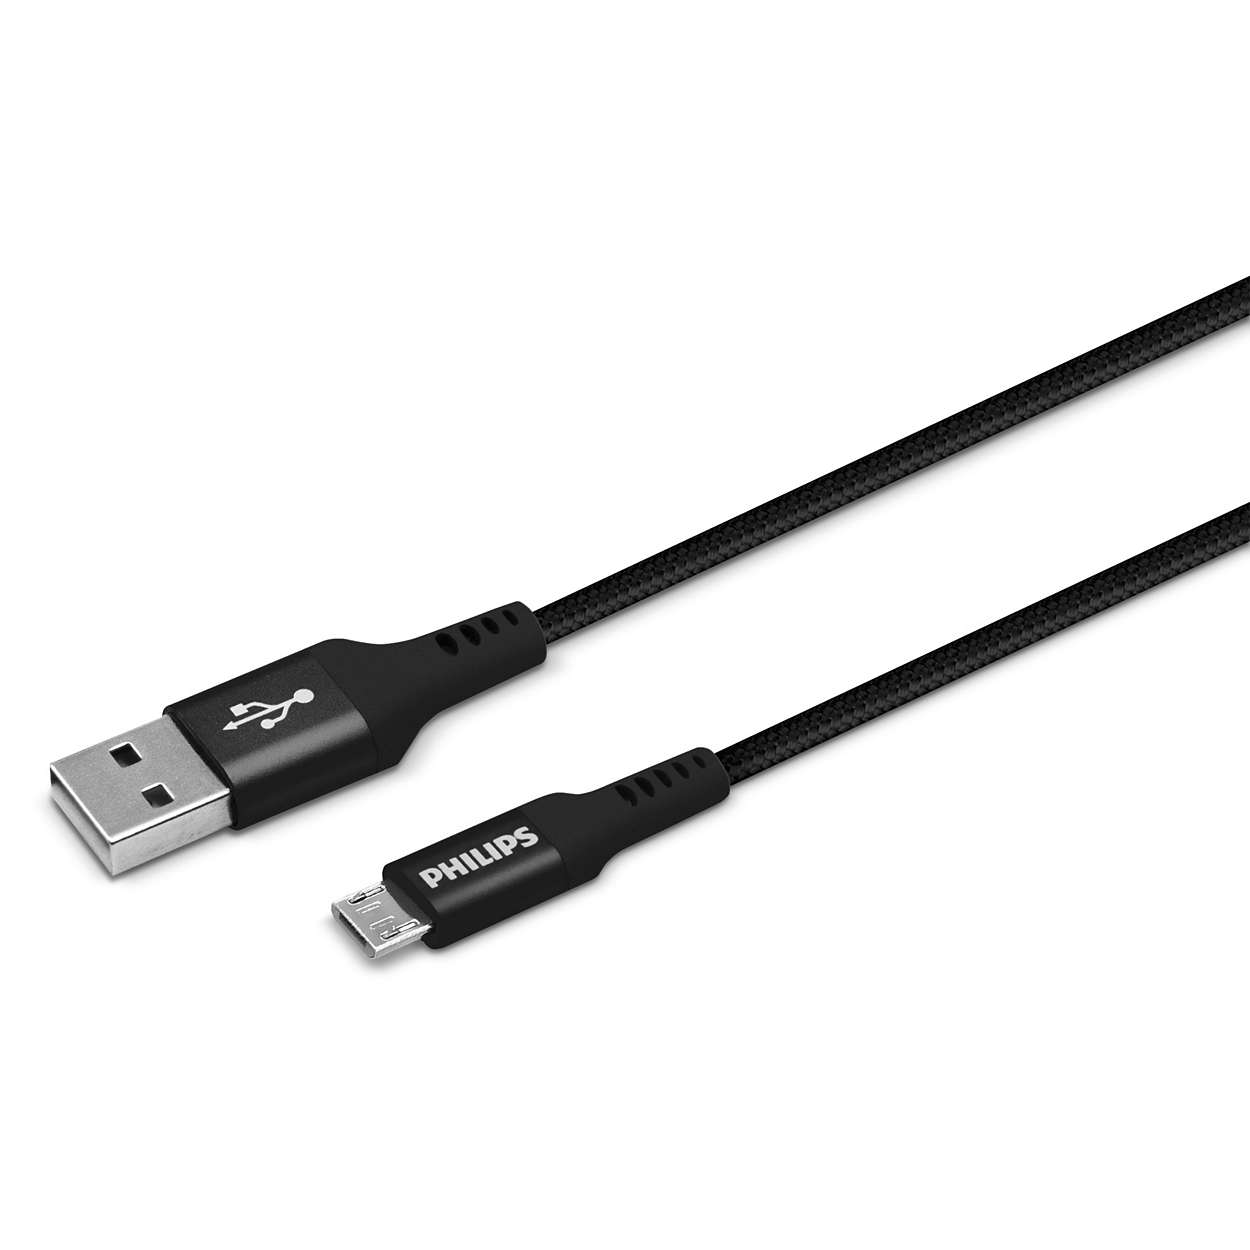 USB to Micro USB cable DLC5203U/00